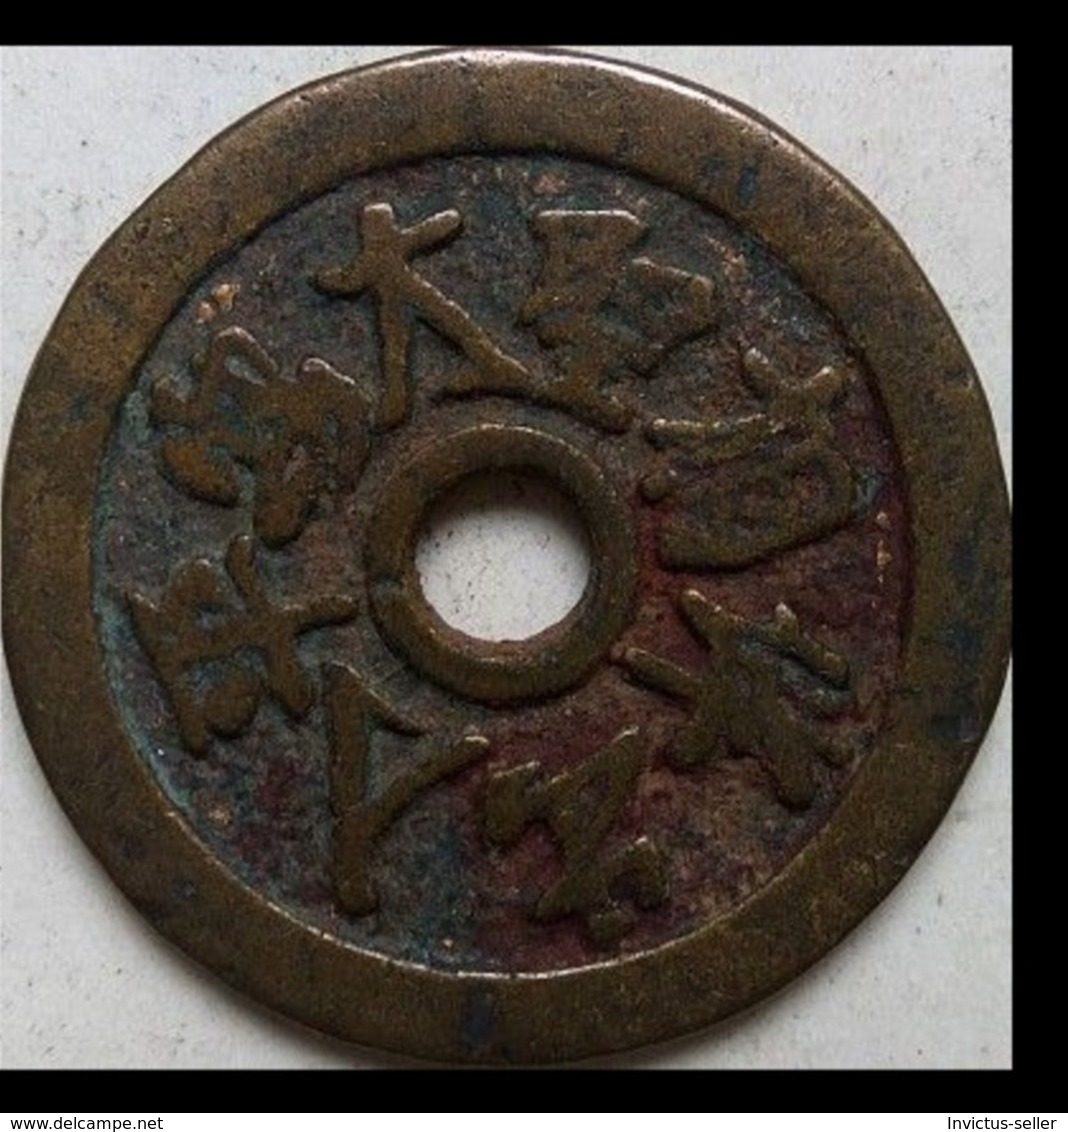 KOREA ANTICA MONETA COREANA PERIODO IMPERIALE IMPERIALE COREANE COINS  PIECES MONET COREA IMPERIAL COD #19 - Korea, North